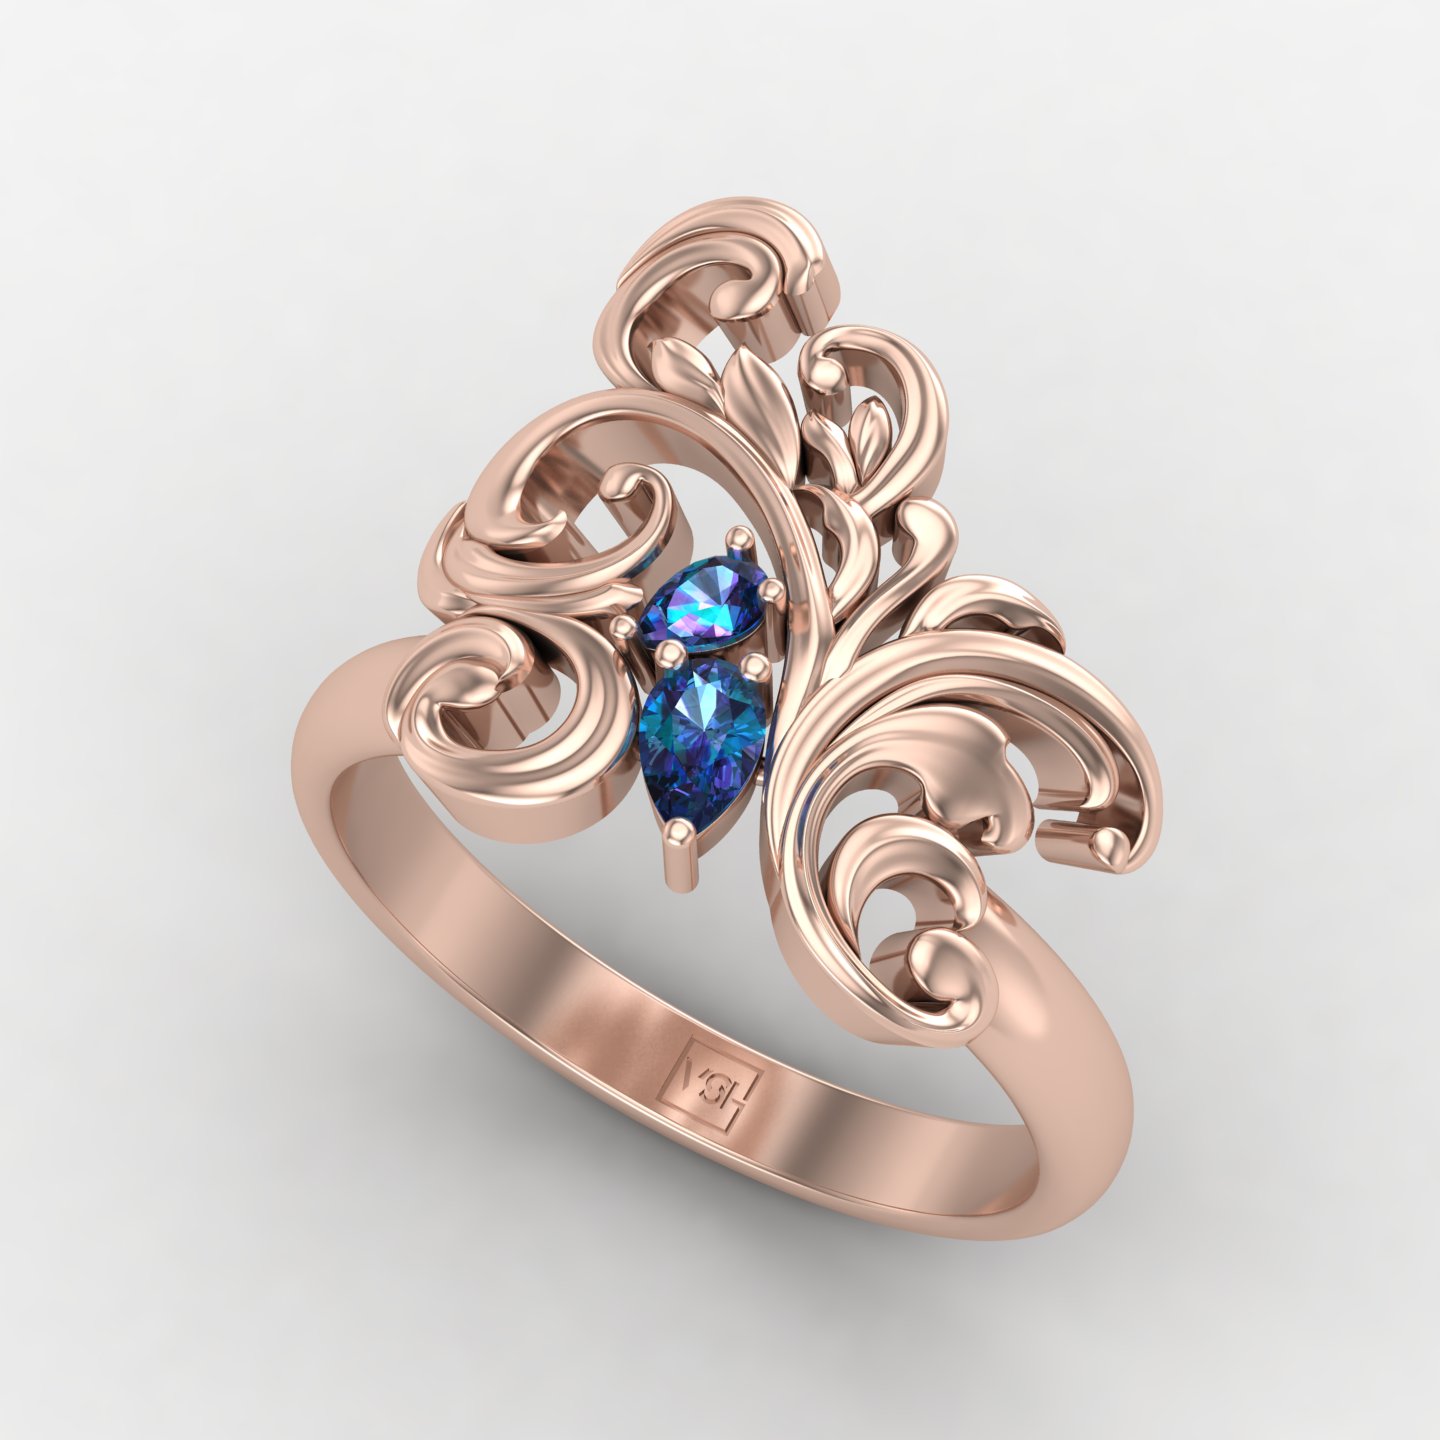 Enchanted Elegance Ring